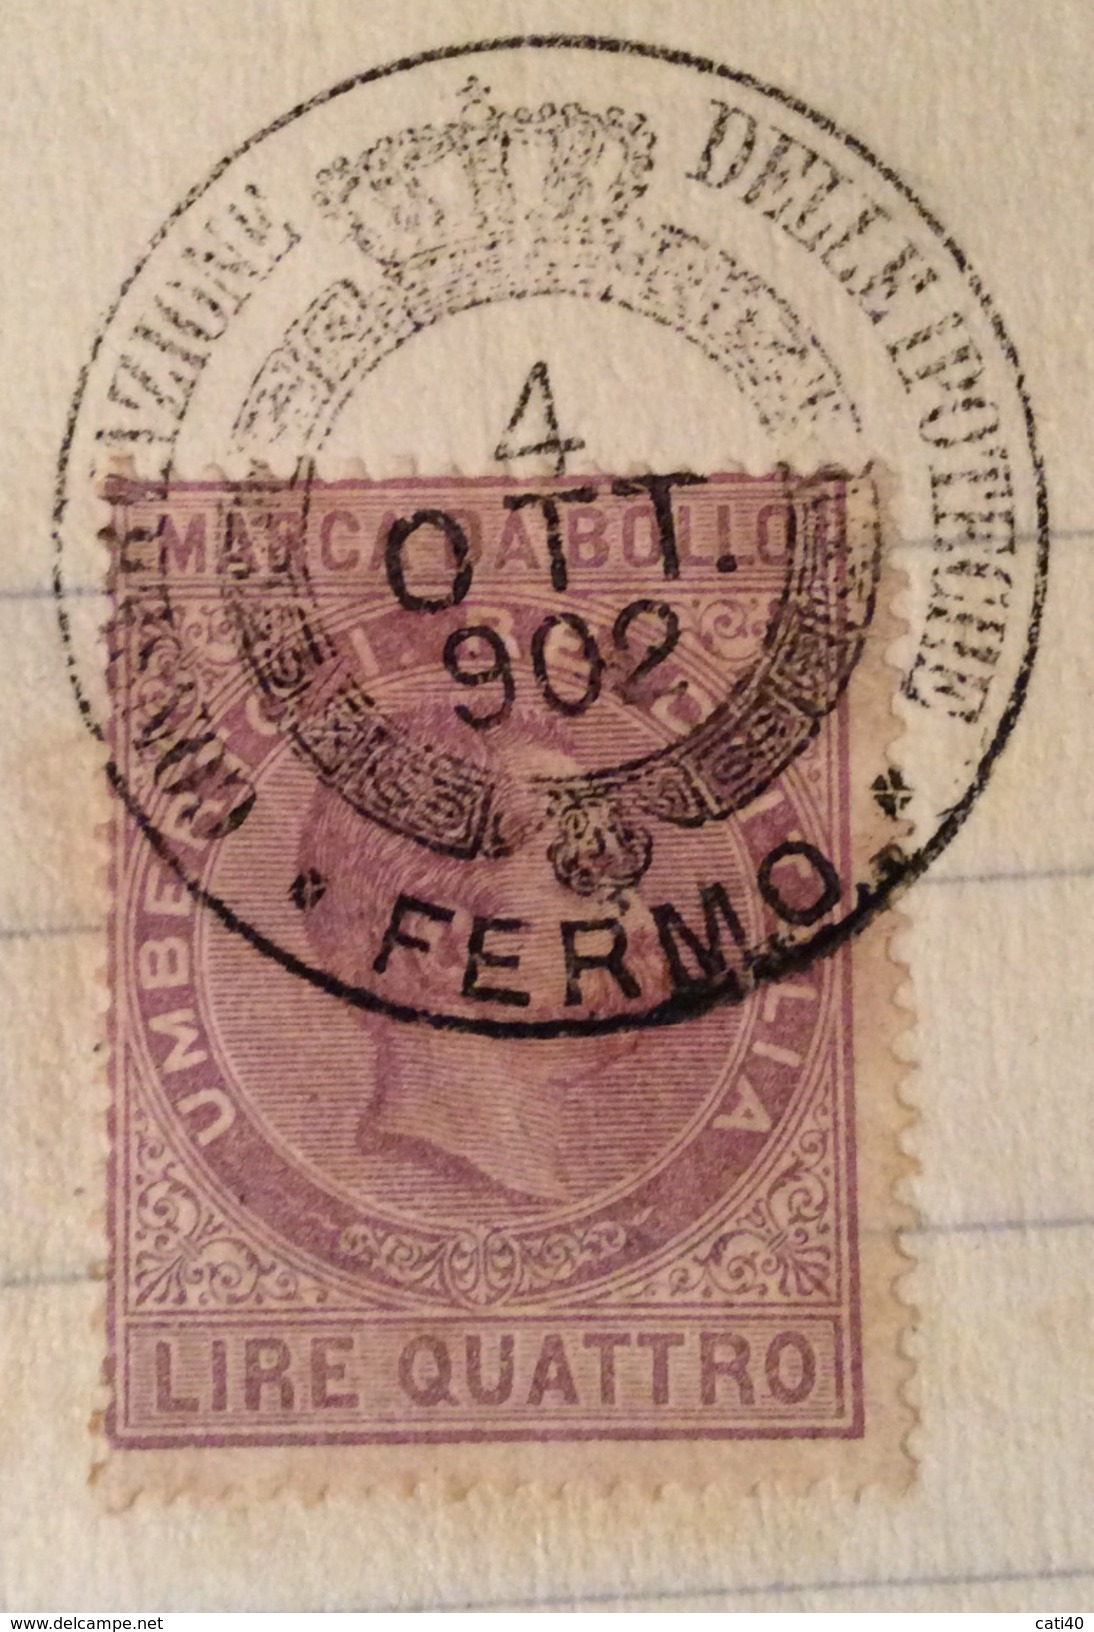 MARCA DA BOLLO UMBERTO LIRE QUATTRO SU DOCUMENTO COMPLETO FERMO 4/10/1902 R - Revenue Stamps